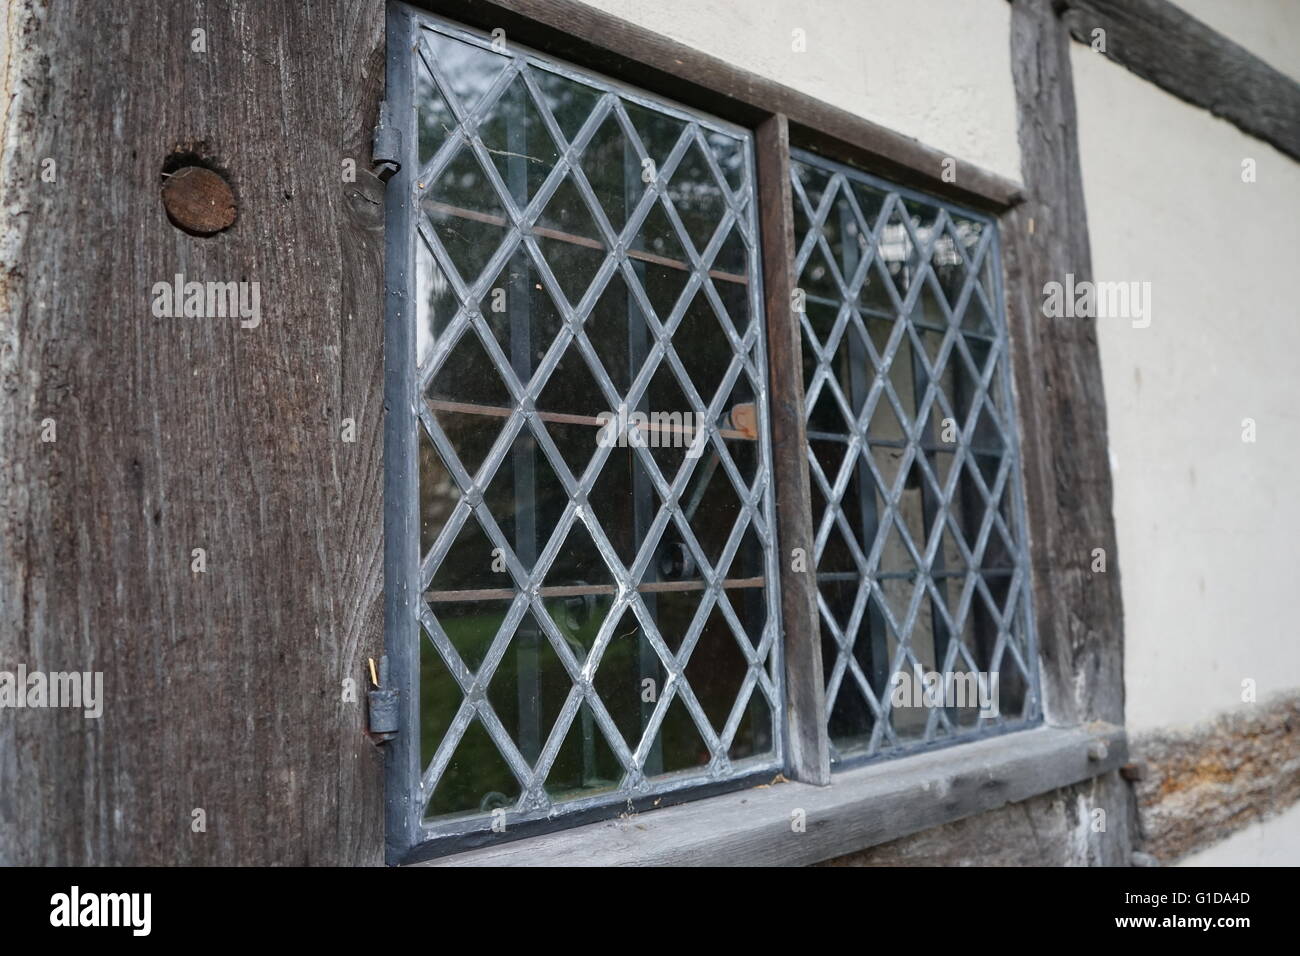 Fenster in Anne Hathaways Hütte, Anne Hathaway, die Ehefrau von William Shakespeare, als Kind lebte verbleit. -Upon-Avon, England. Der älteste Teil des Hauses wurde vor dem 15. Jahrhundert errichtet; das obere Teil ist 17. Jahrhundert Stockfoto